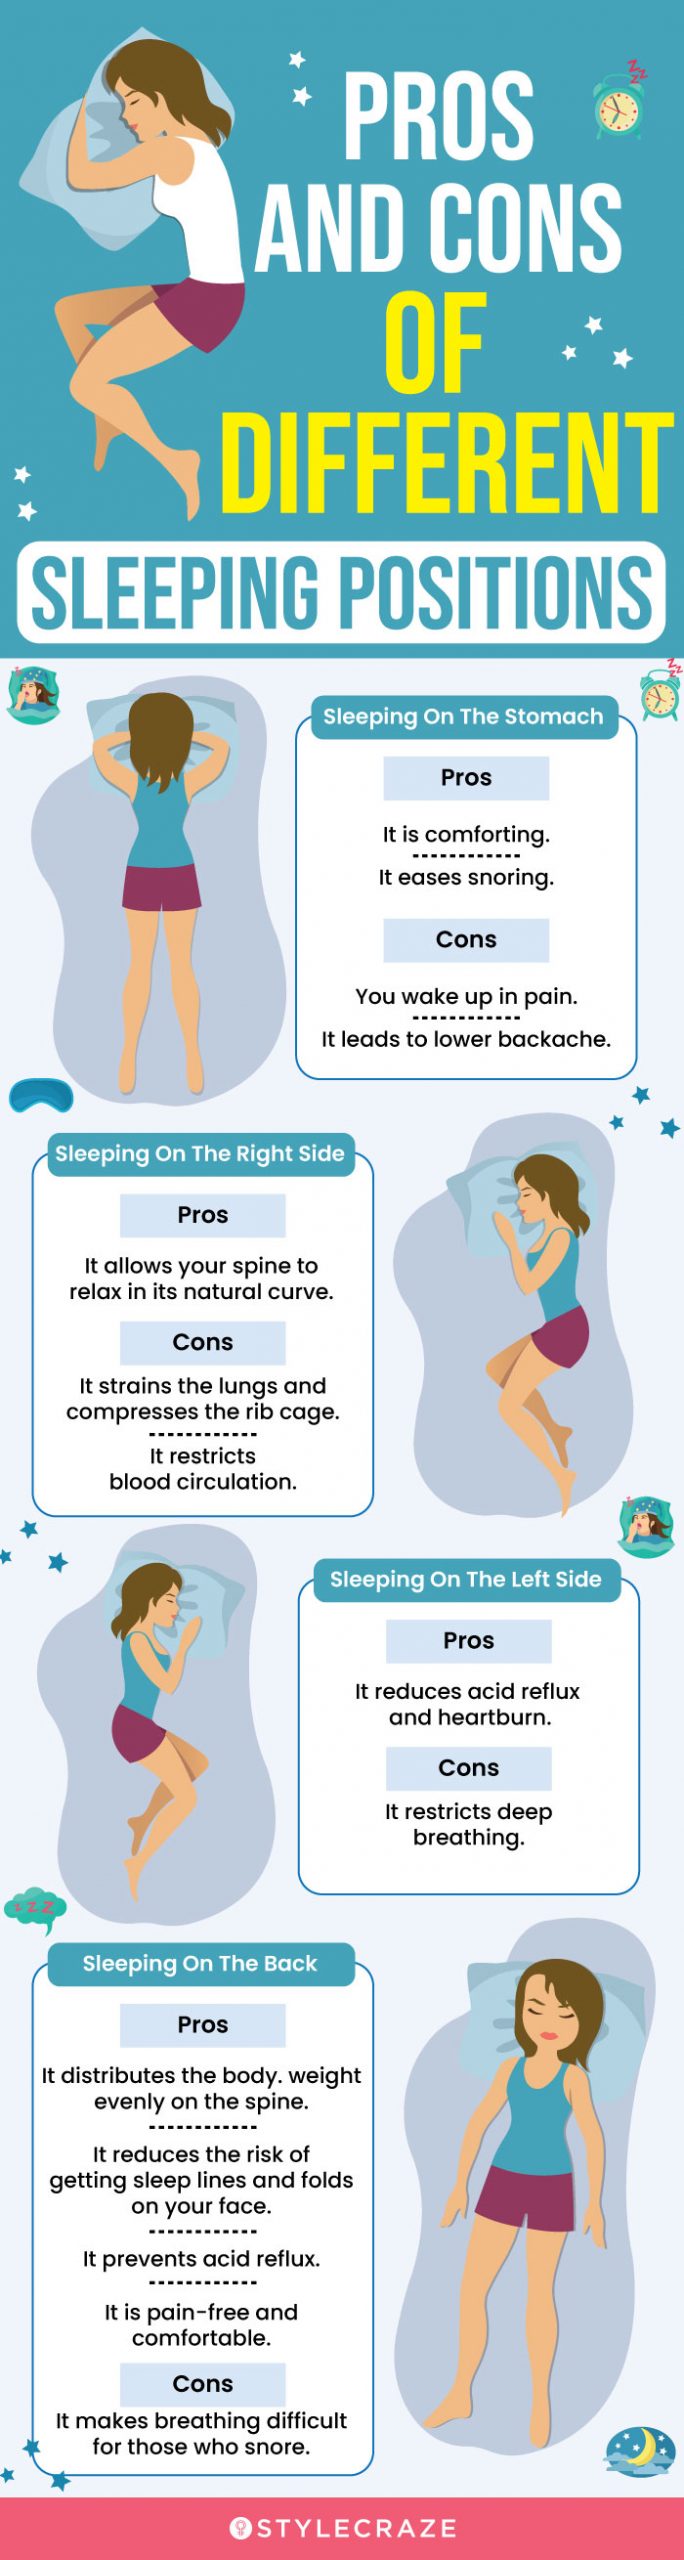 5 Yoga Poses to Help You Sleep Better - YouTube